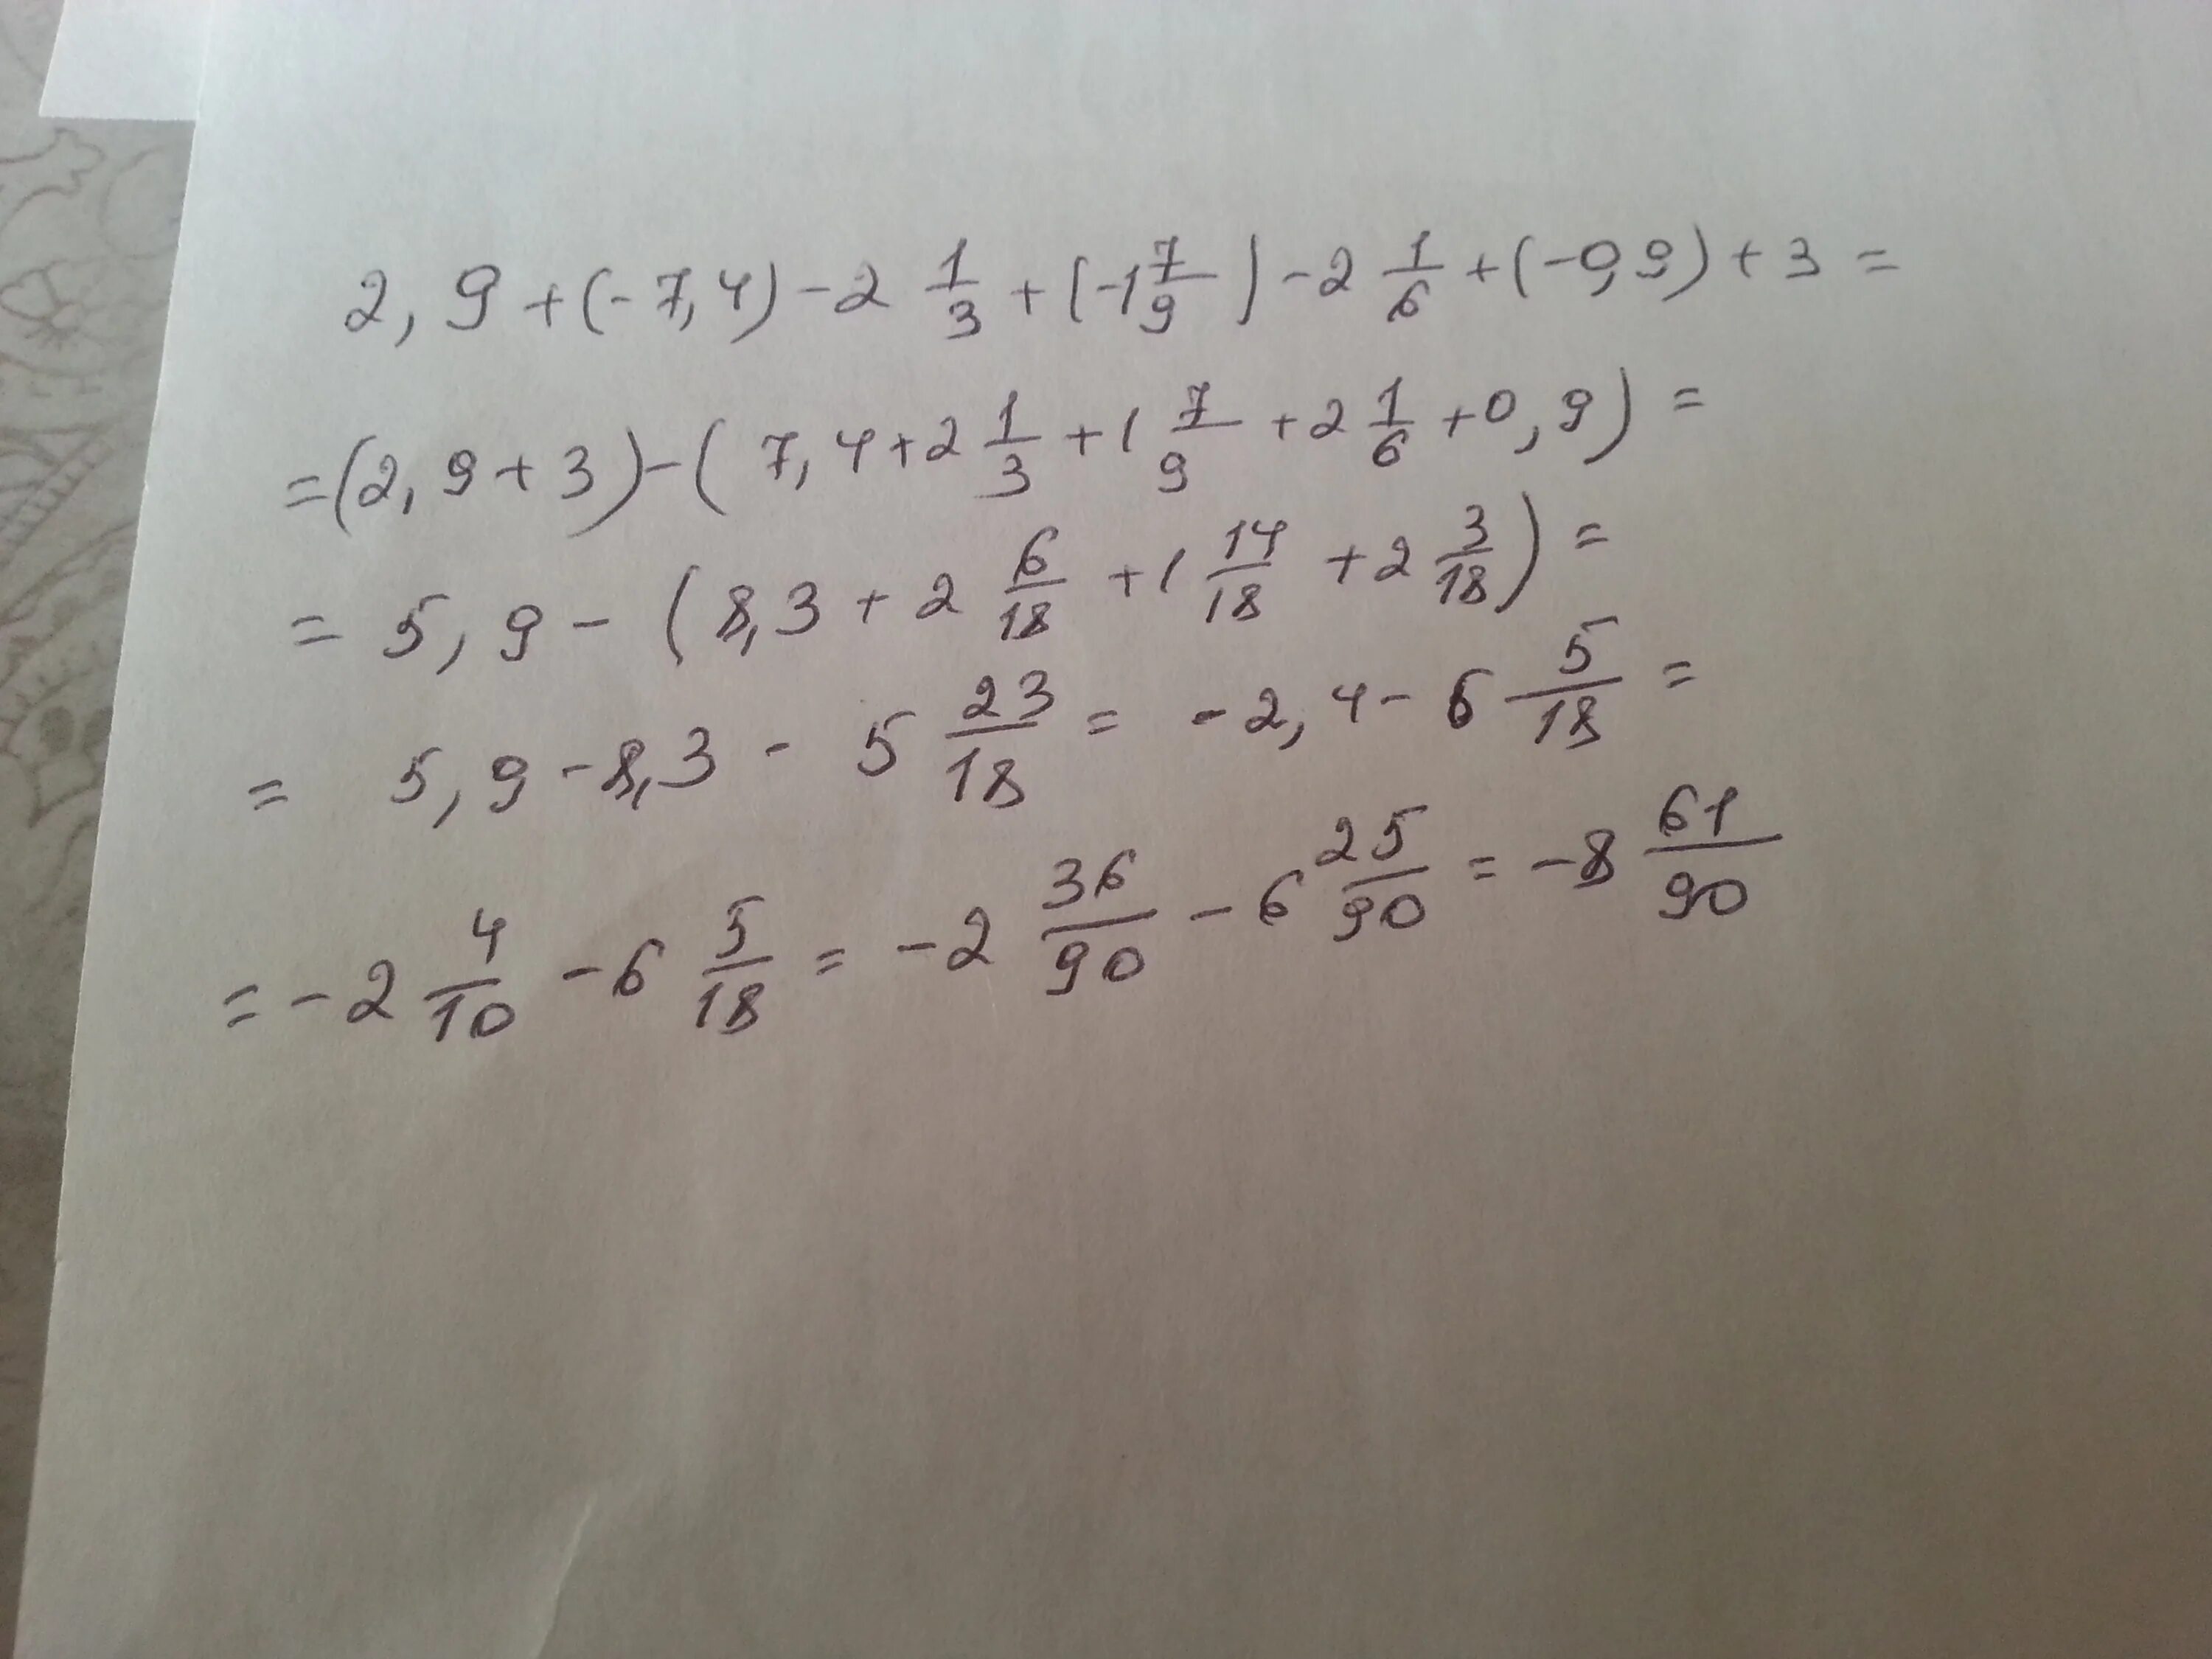 7.1 8.2. 2 2 9 4 3+1 3 Вычислите. Вычислите 4 4/9:4/9-1 1/2*3 1/3. Вычислить. (1/7)^-2. Вычислите 2/3+1/9.